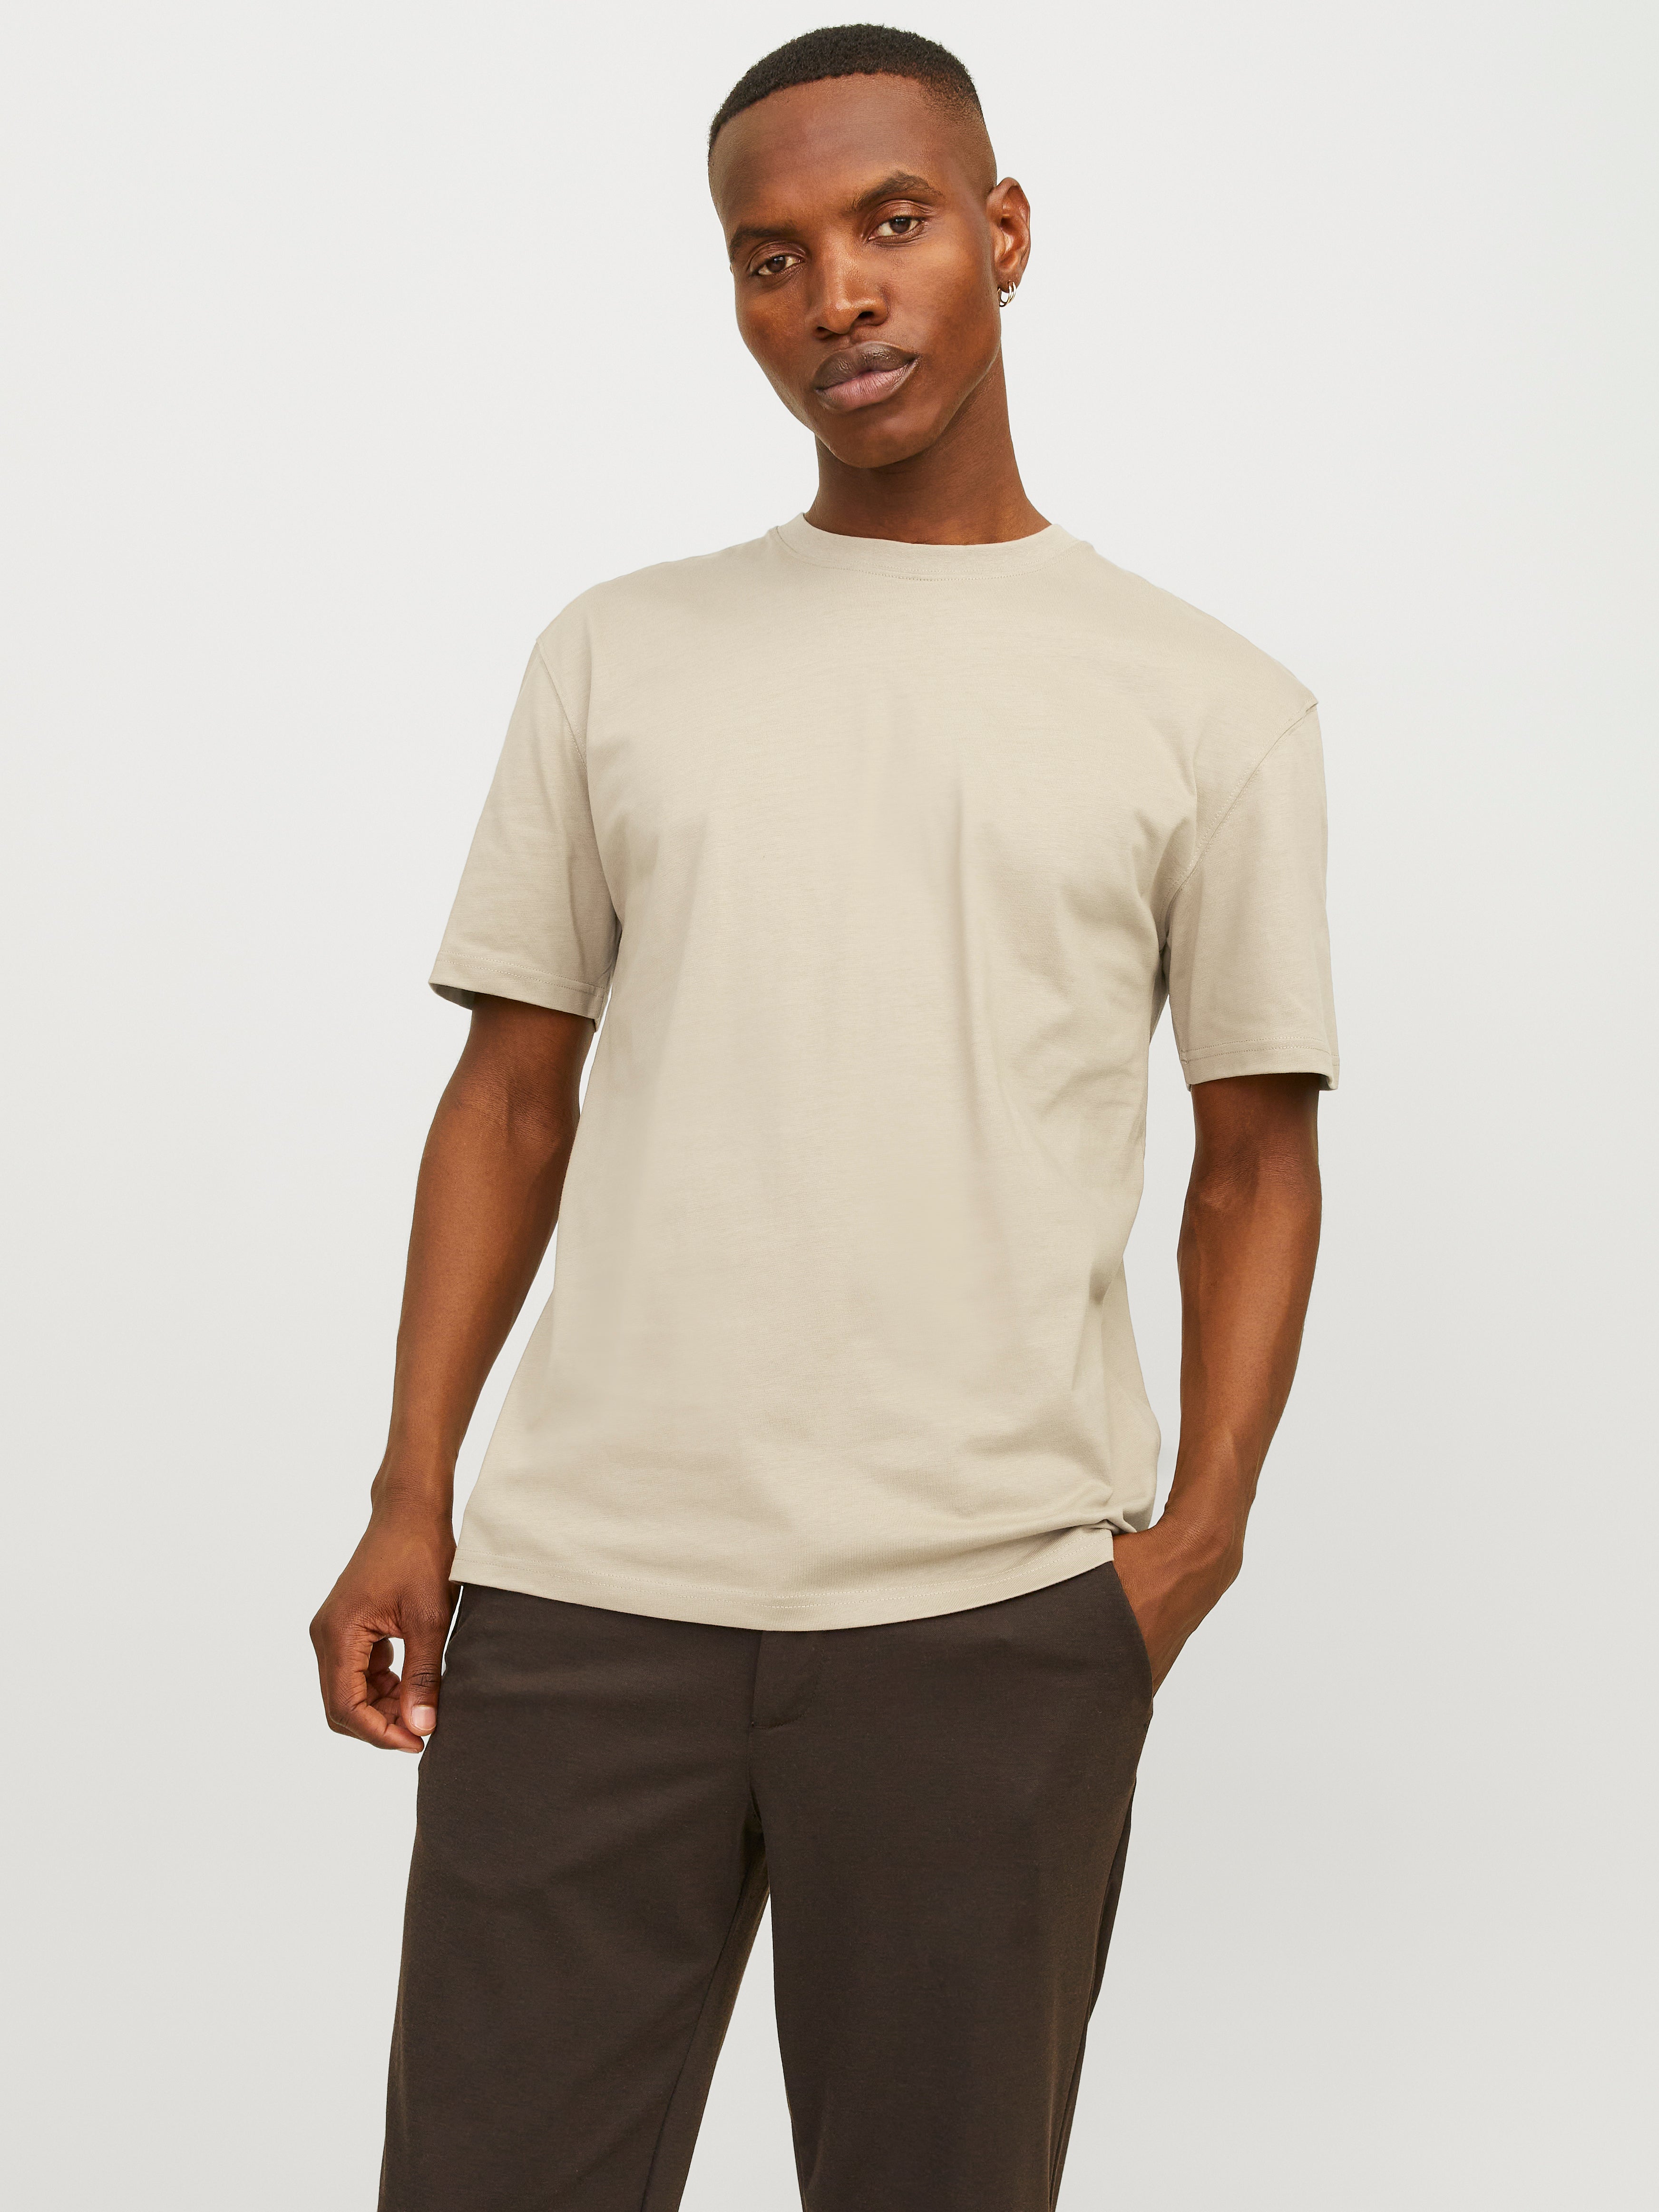 Beige T-shirt Jones® | Plain neck & Jack | Crew